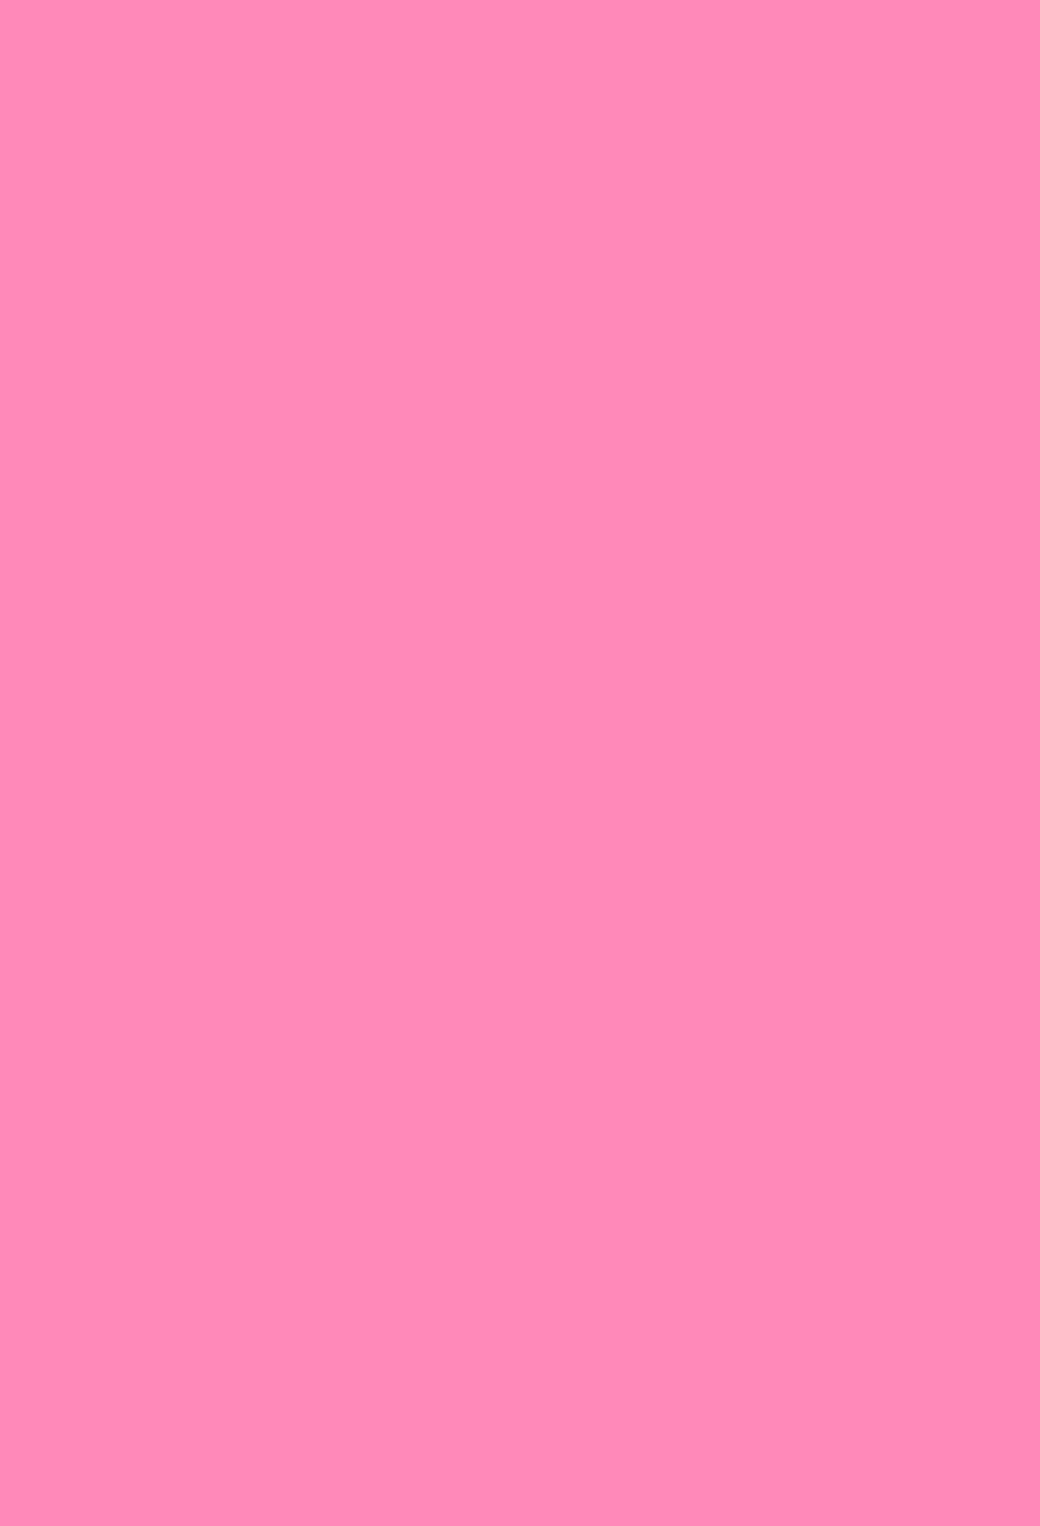 壁紙 Iphone ピンク 最高の選択されたhdの壁紙画像